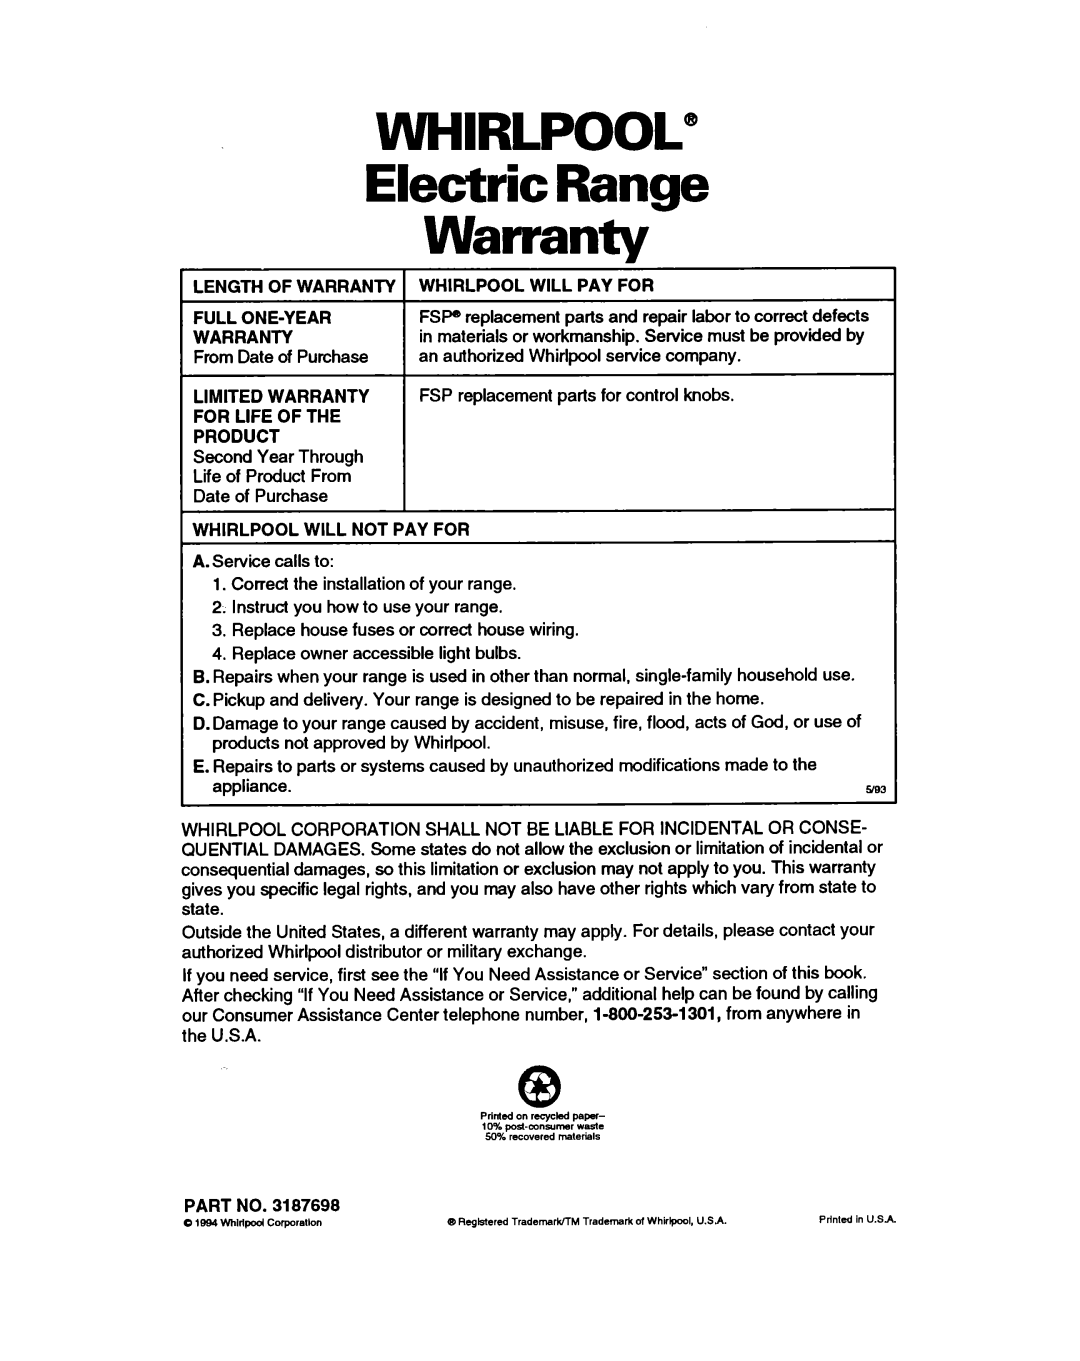 Whirlpool RF385PXY5 warranty WHIRLPOOL” Electric Range Warranty 